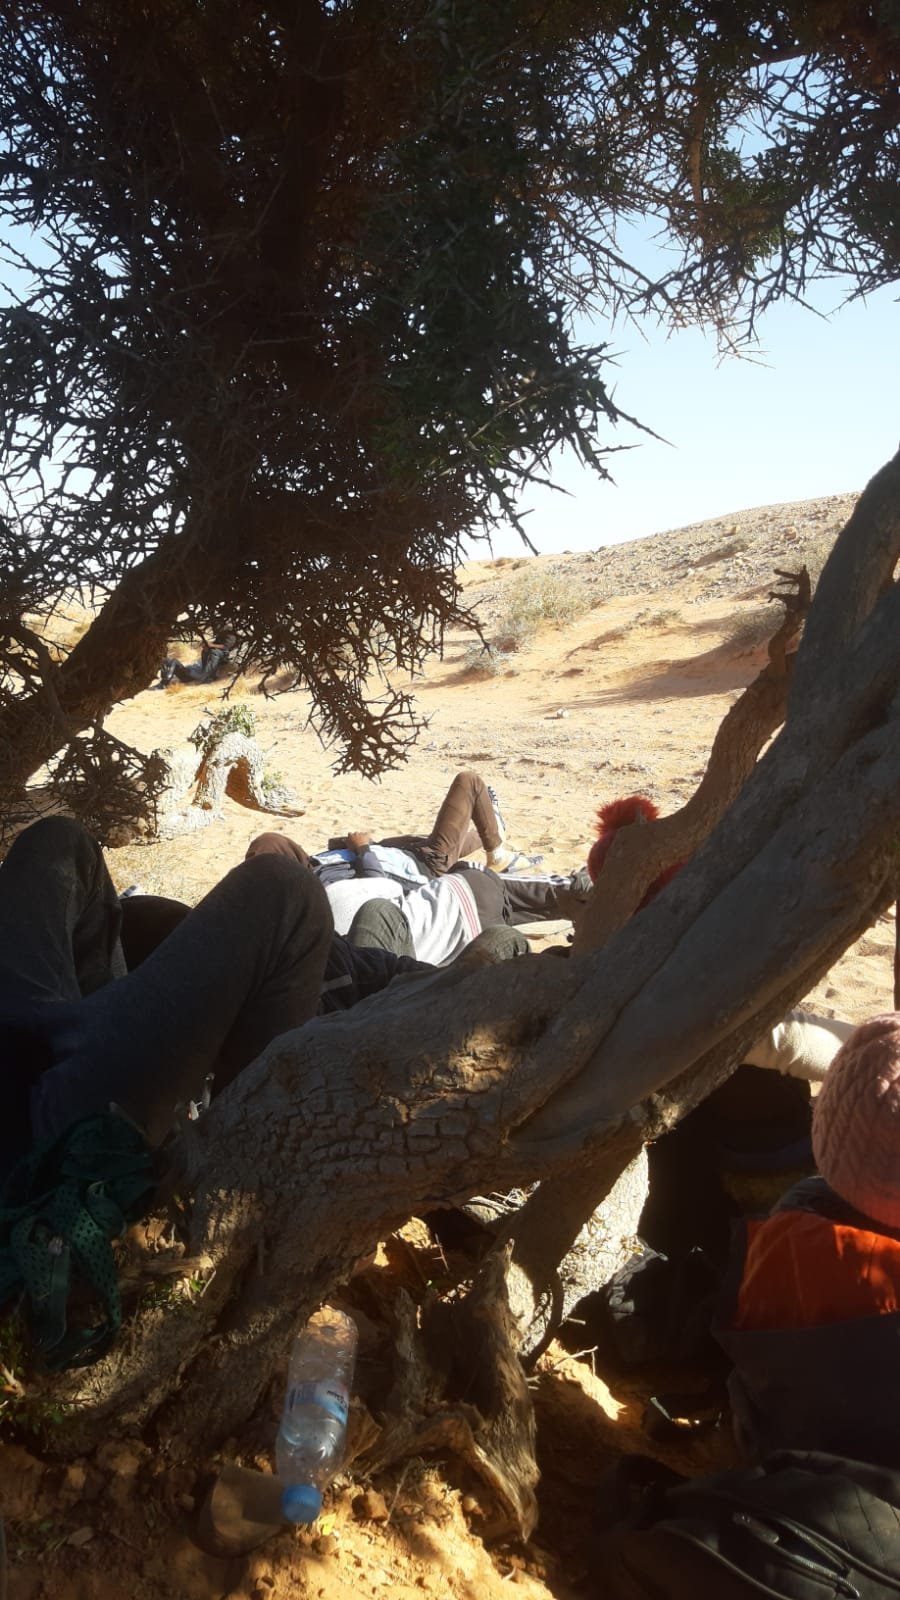 Des migrants dans le désert après avoir été interpellés par les autorités marocaines. Crédit : DR